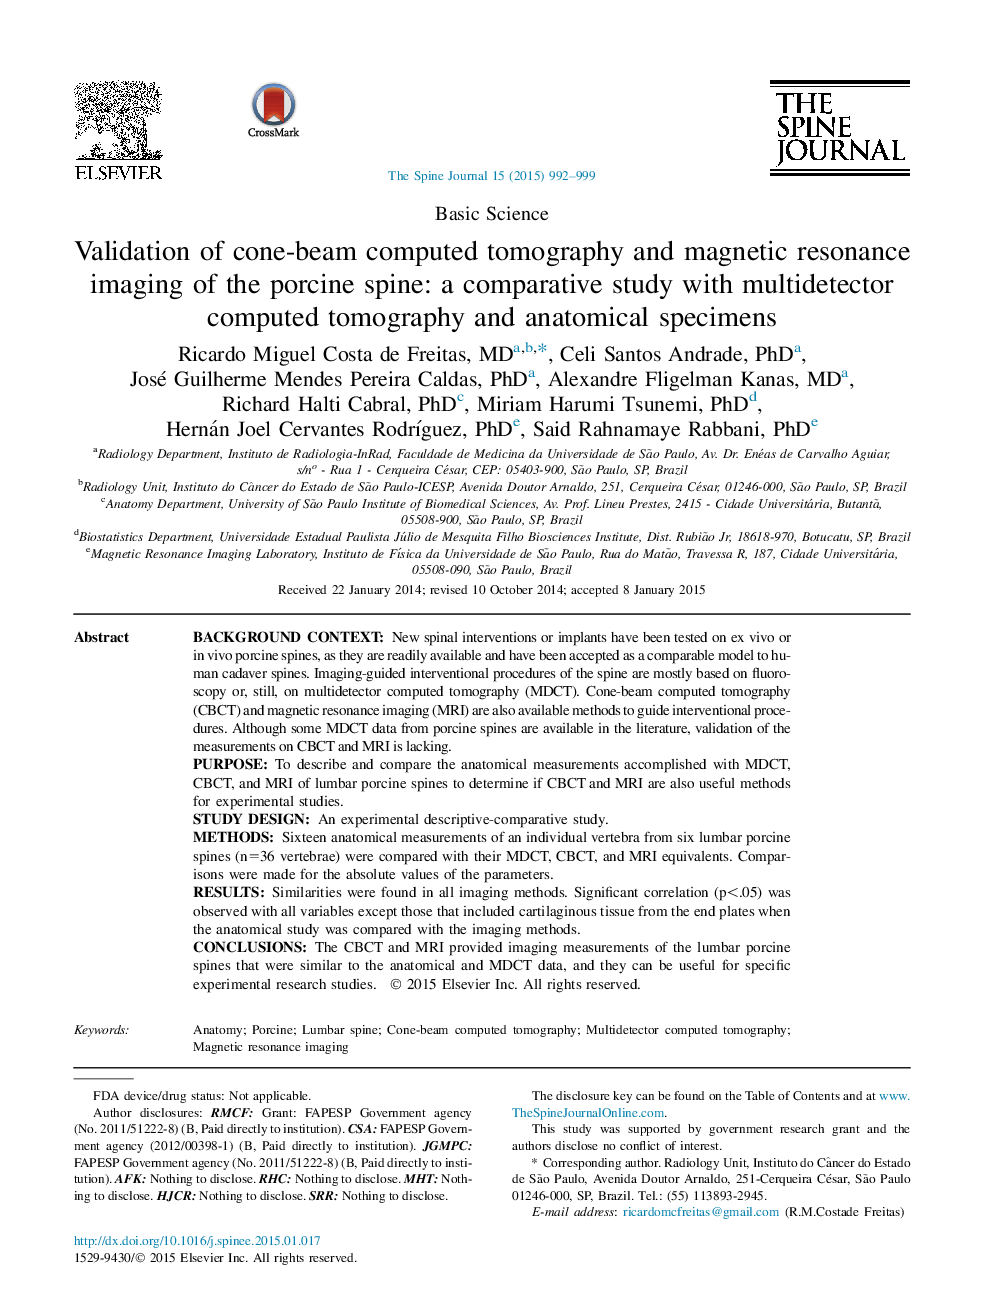 اعتبار سنجی توموگرافی کامپوزیتی پرتوهای مخروطی و تصویربرداری رزونانس مغناطیسی ستون فقرات گوسفند: یک مطالعه مقایسه ای با توموگرافی کامپیوتری مولتی دیجیتال و نمونه های آناتومیک 